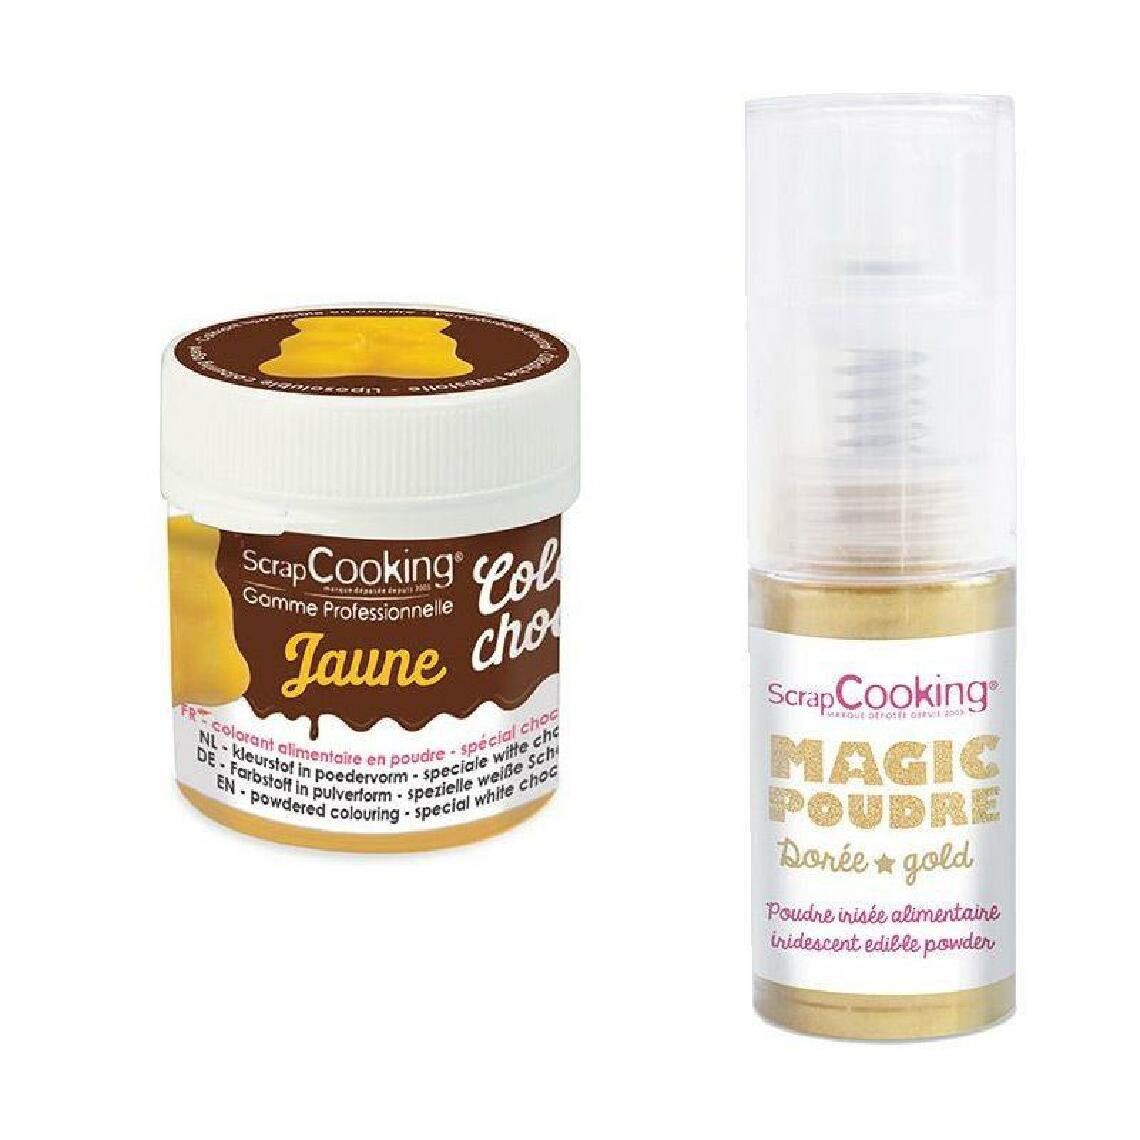 Scrapcooking - Colorant alimentaire liposoluble Color'choco 5 g jaune + Poudre alimentaire irisée dorée - Kits créatifs